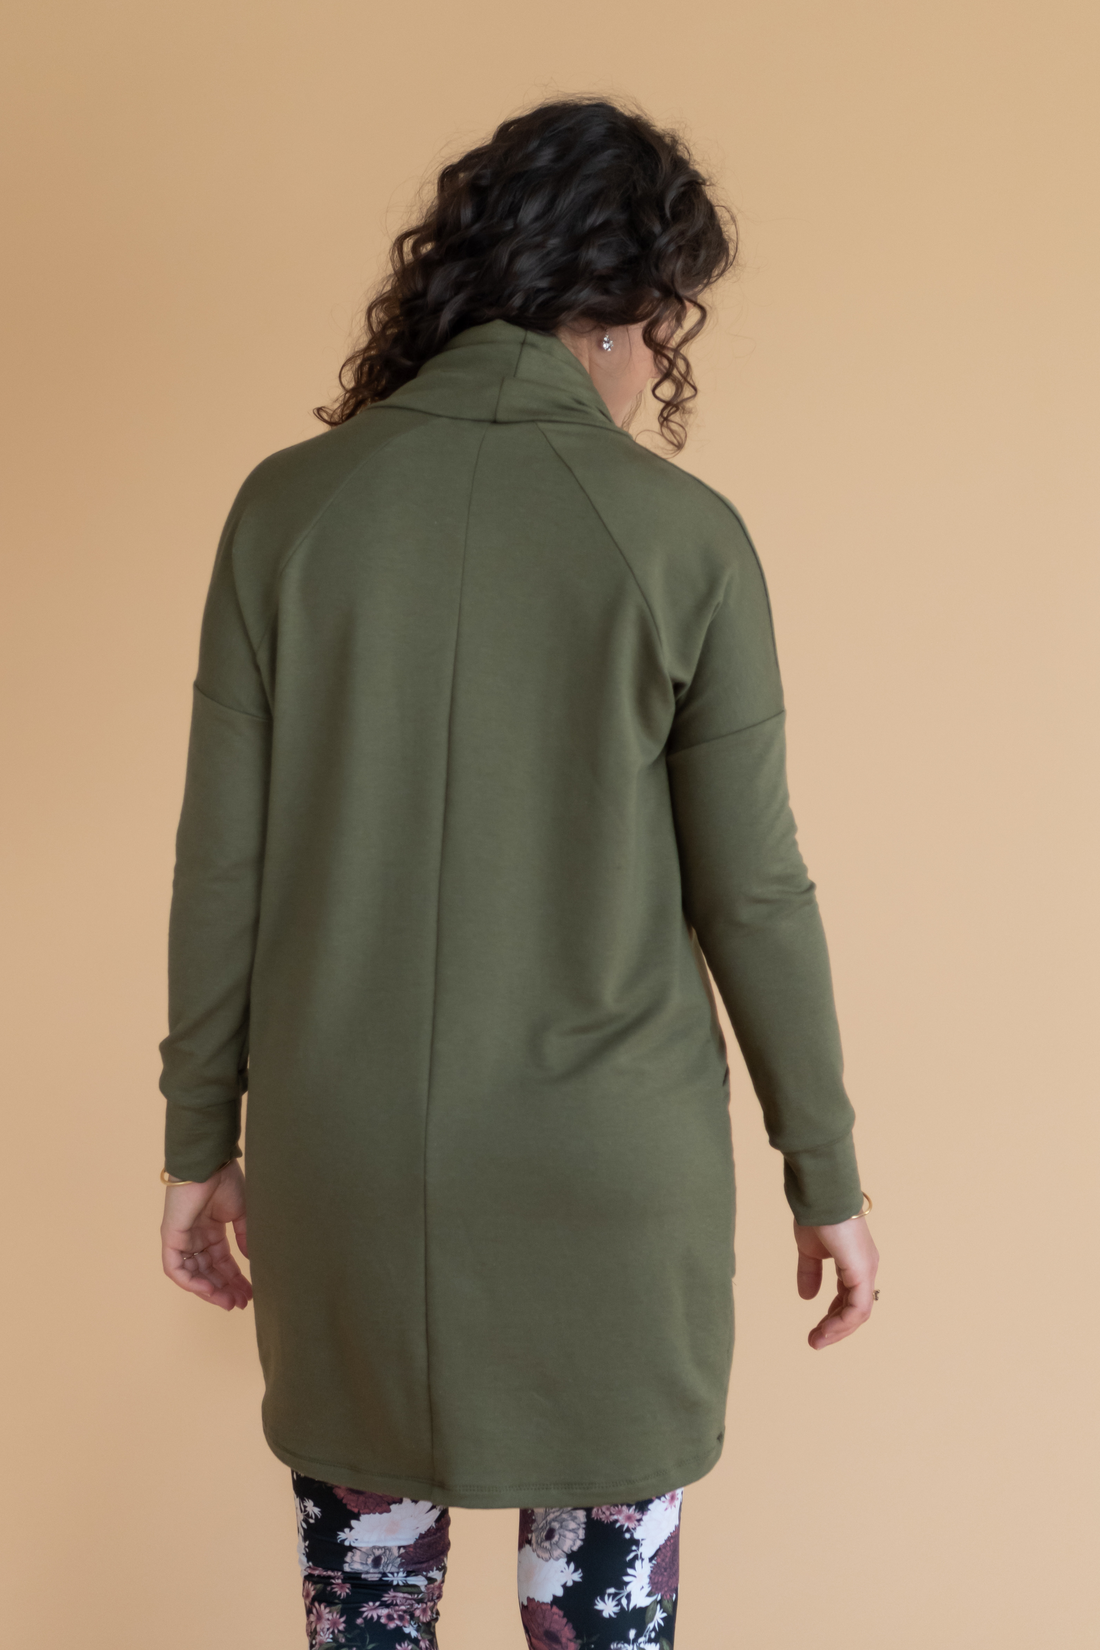 Tunique pour femme vert khaki à manches longues et col haut, avec poches, faite au Québec.